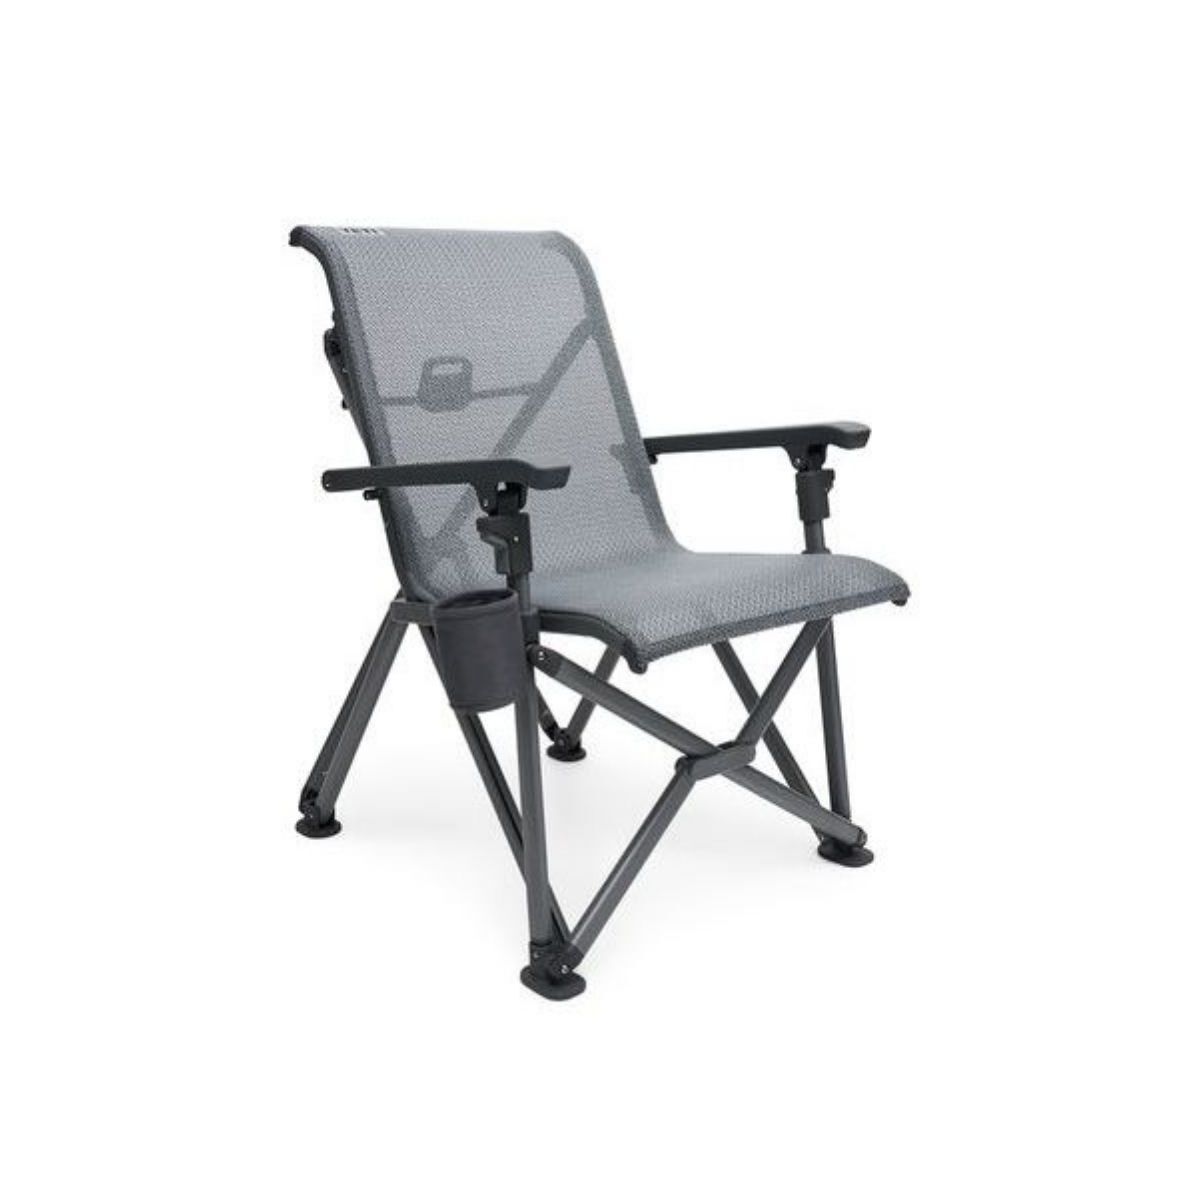 Yeti Trailhead Camp Chair - Camp chair